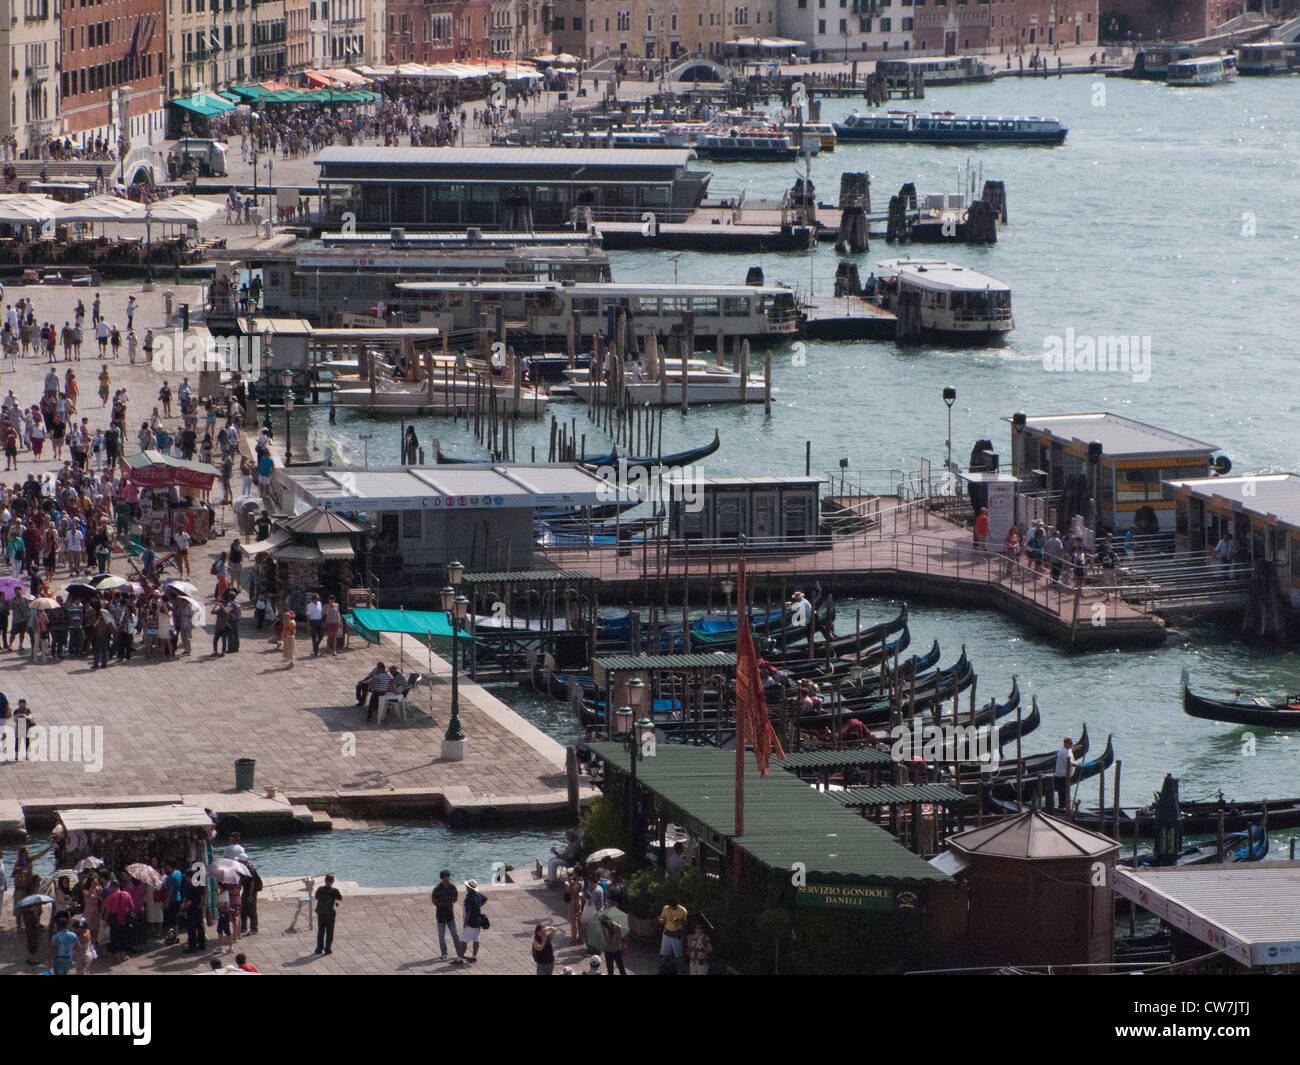 Une vue de gondoles sur la lagune du Palais des Doges, Venise, Italie Banque D'Images